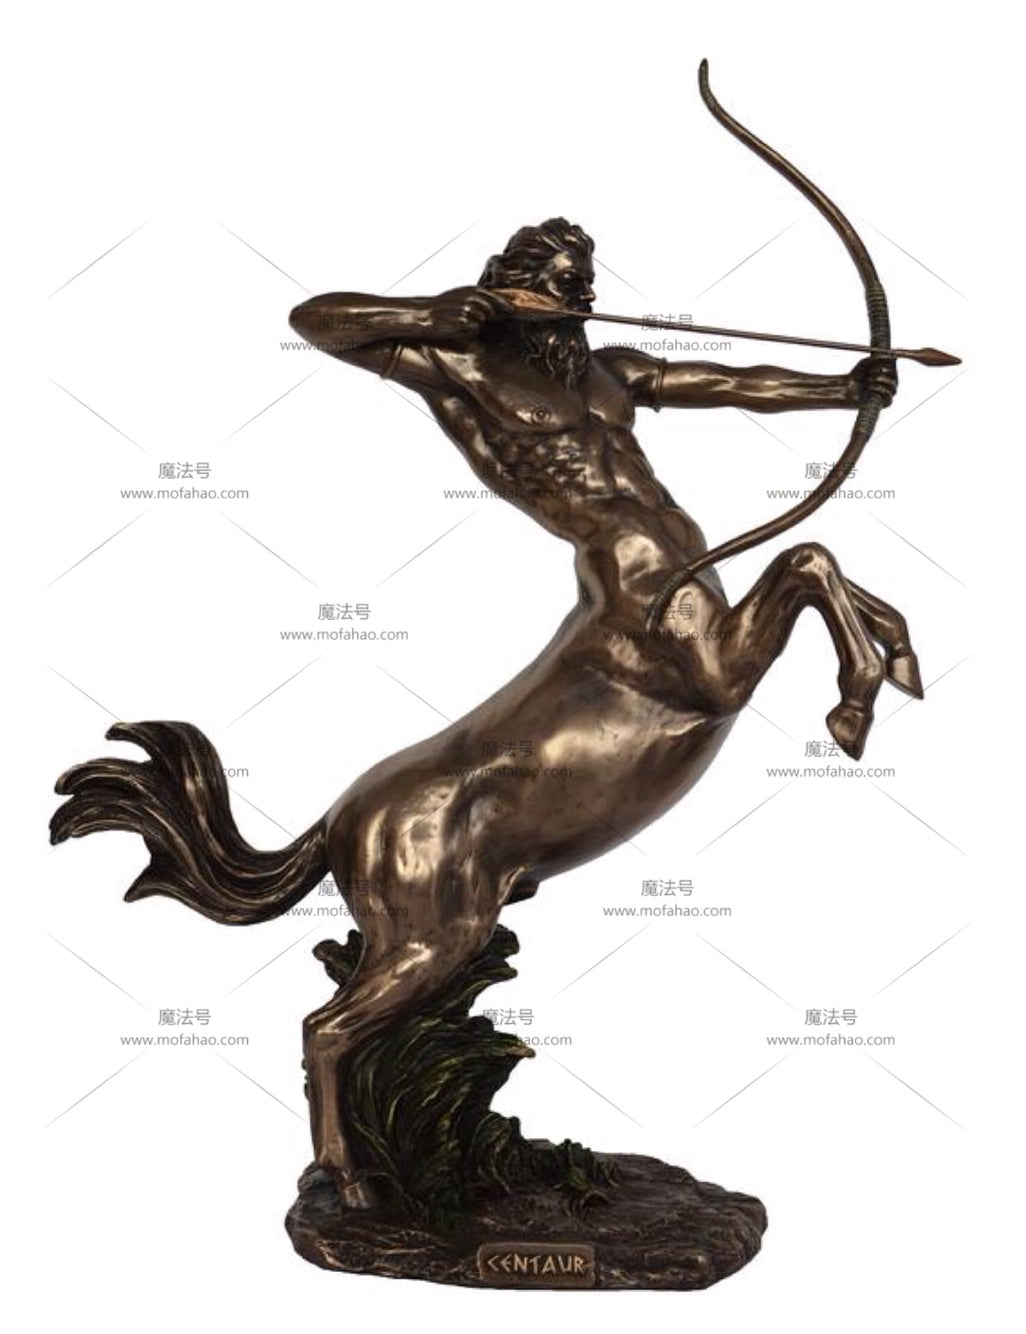 能量雕像系列~进口半人马冷铸青铜树脂雕像-半人半马Kentauros神话手工制作